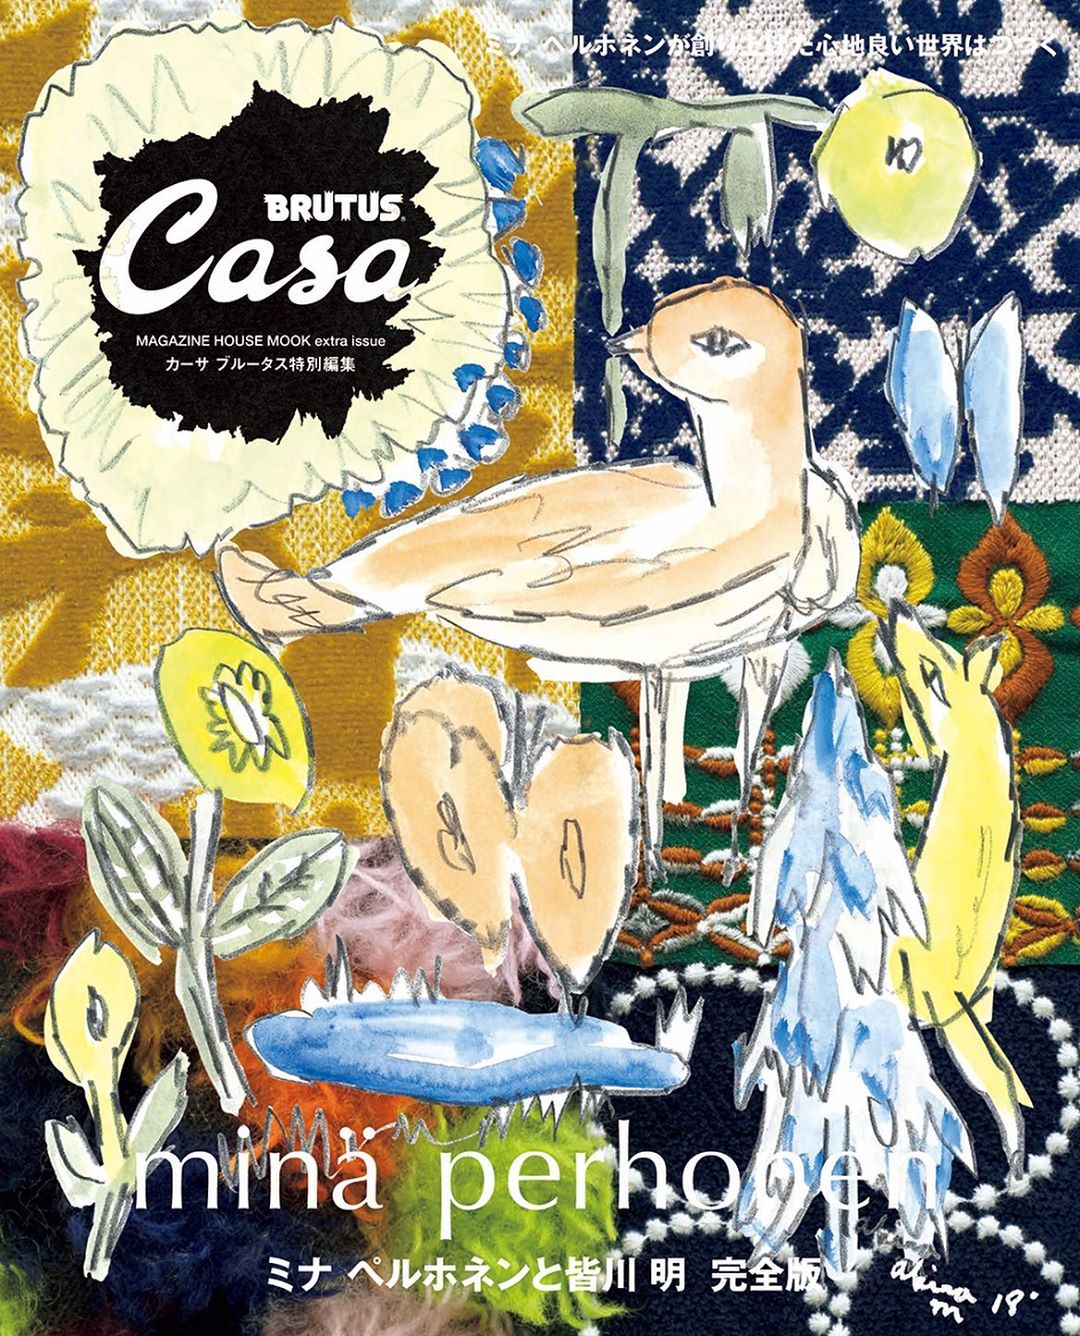 Casabrutus 発売中のカーサ ブルータス特別編集ムック ミナ ペルホネンと皆川 明 完全版 表紙のイラストは デザイナーの皆川が本誌のために描き下ろしてくれました テキスタ Wacoca